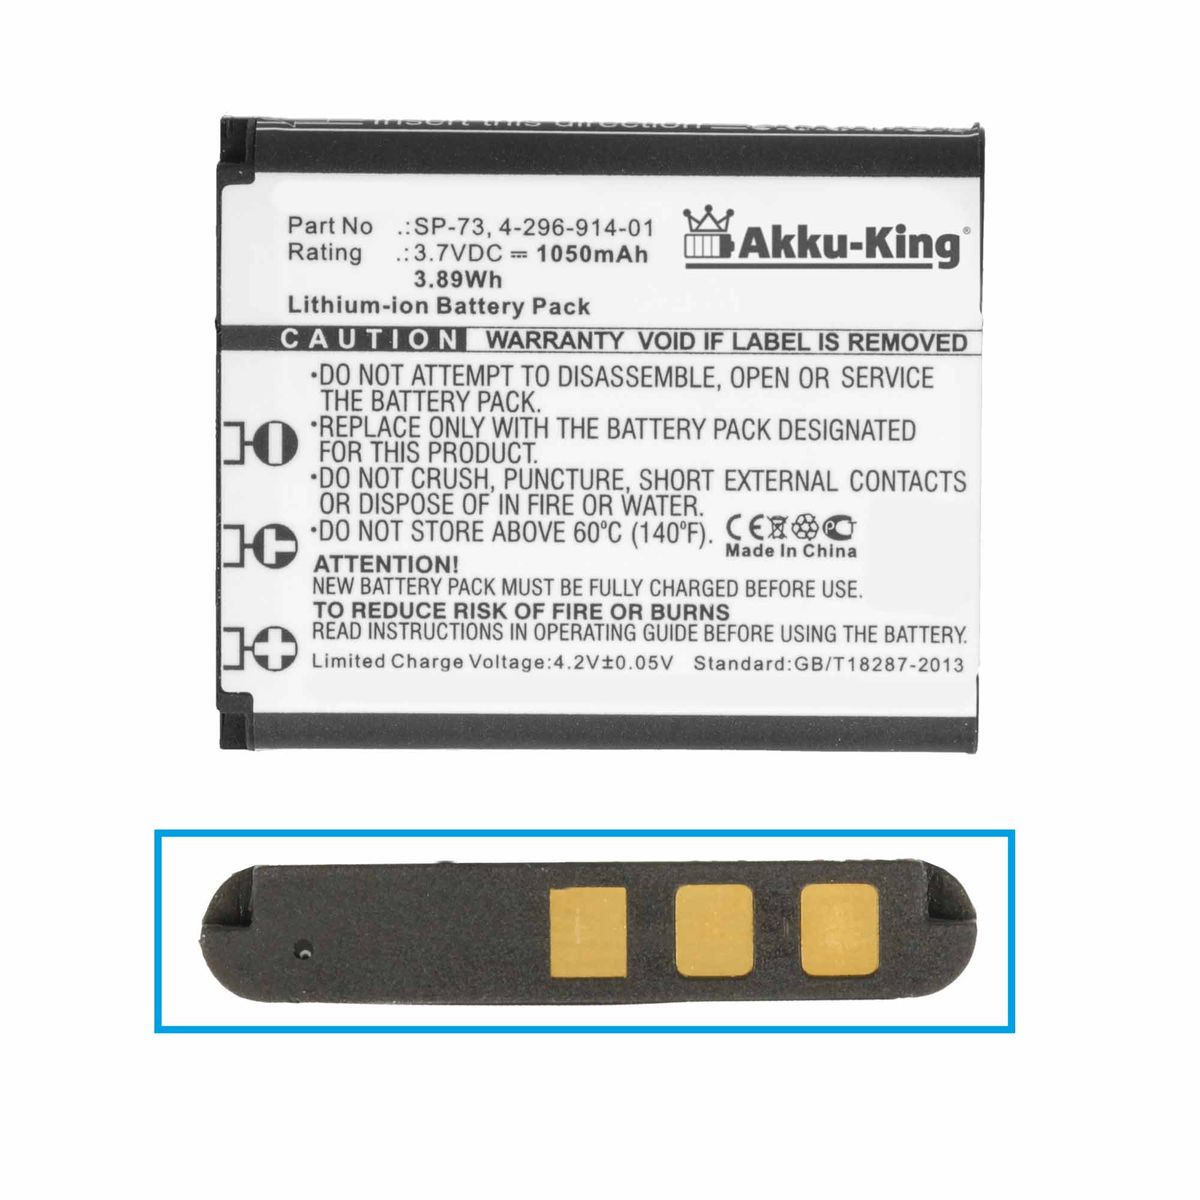 AKKU-KING Akku kompatibel mit Sony Li-Ion Volt, Geräte-Akku, SP-73 3.7 1050mAh